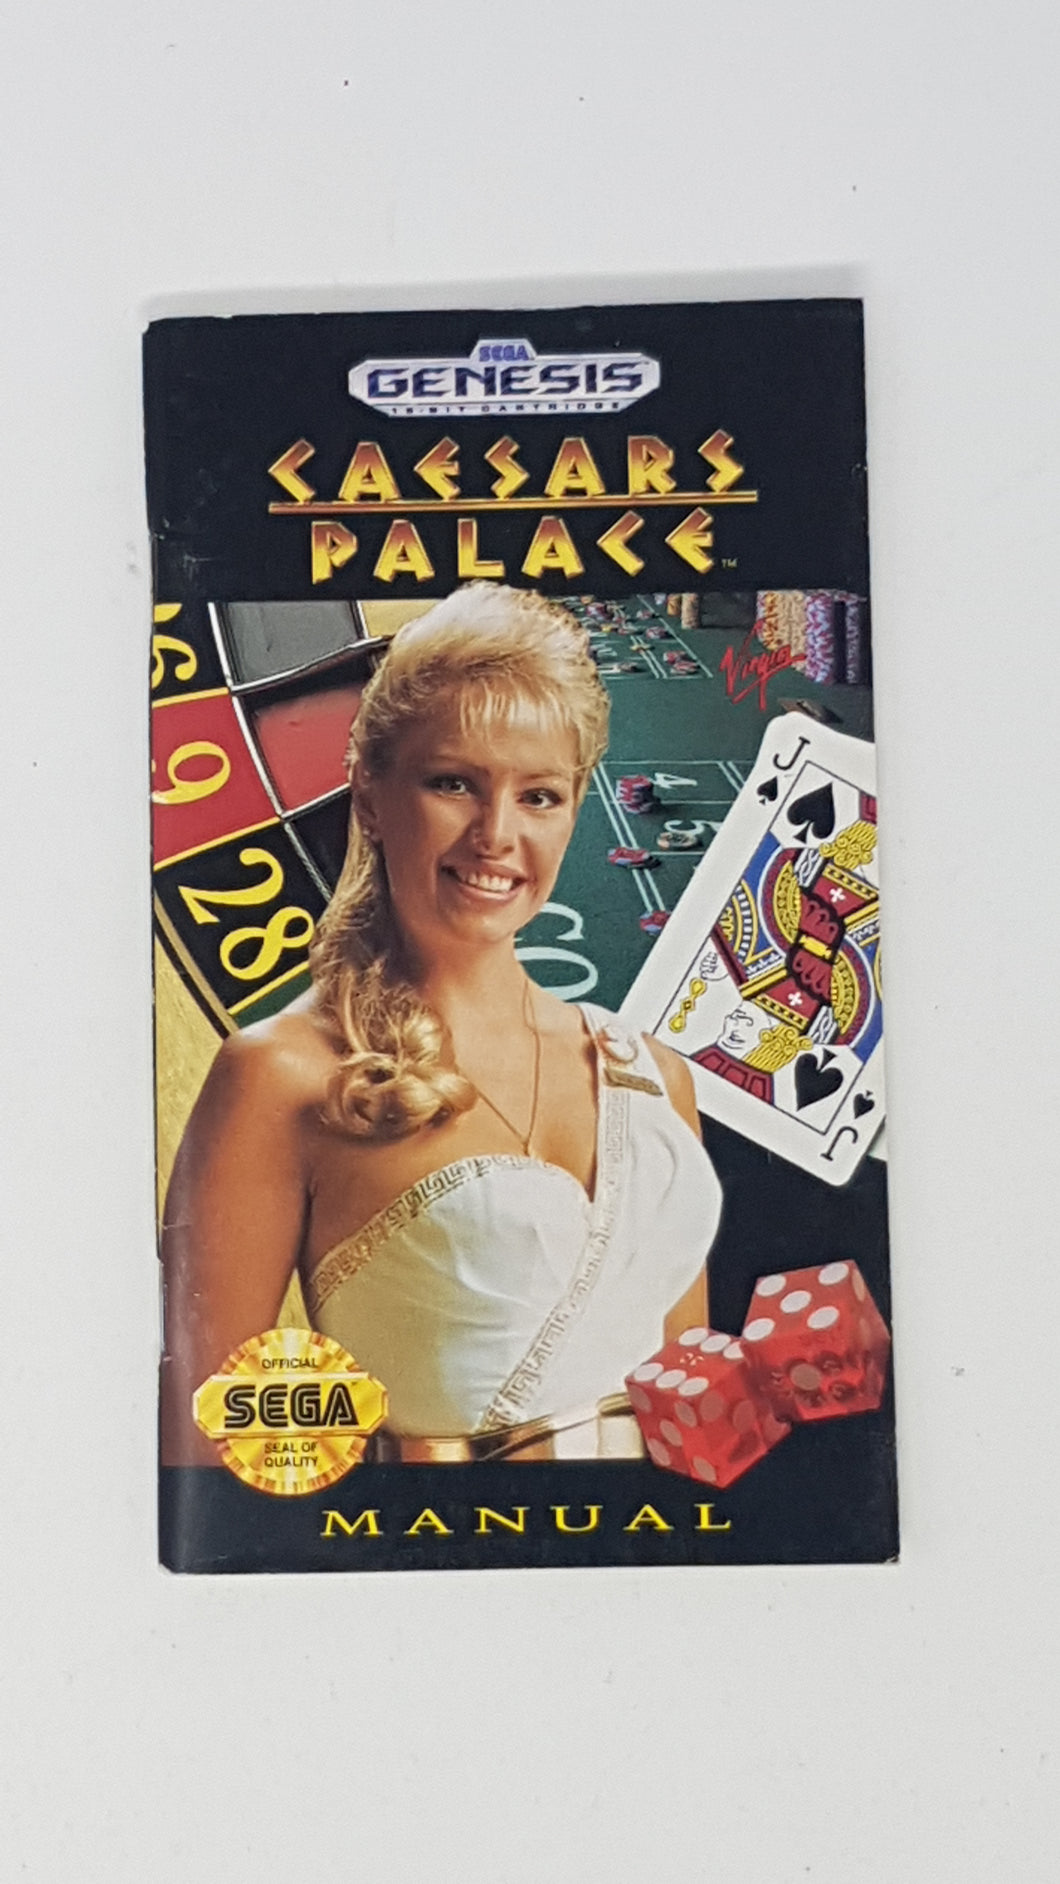 Caesars Palace [manuel] - Sega Genesis